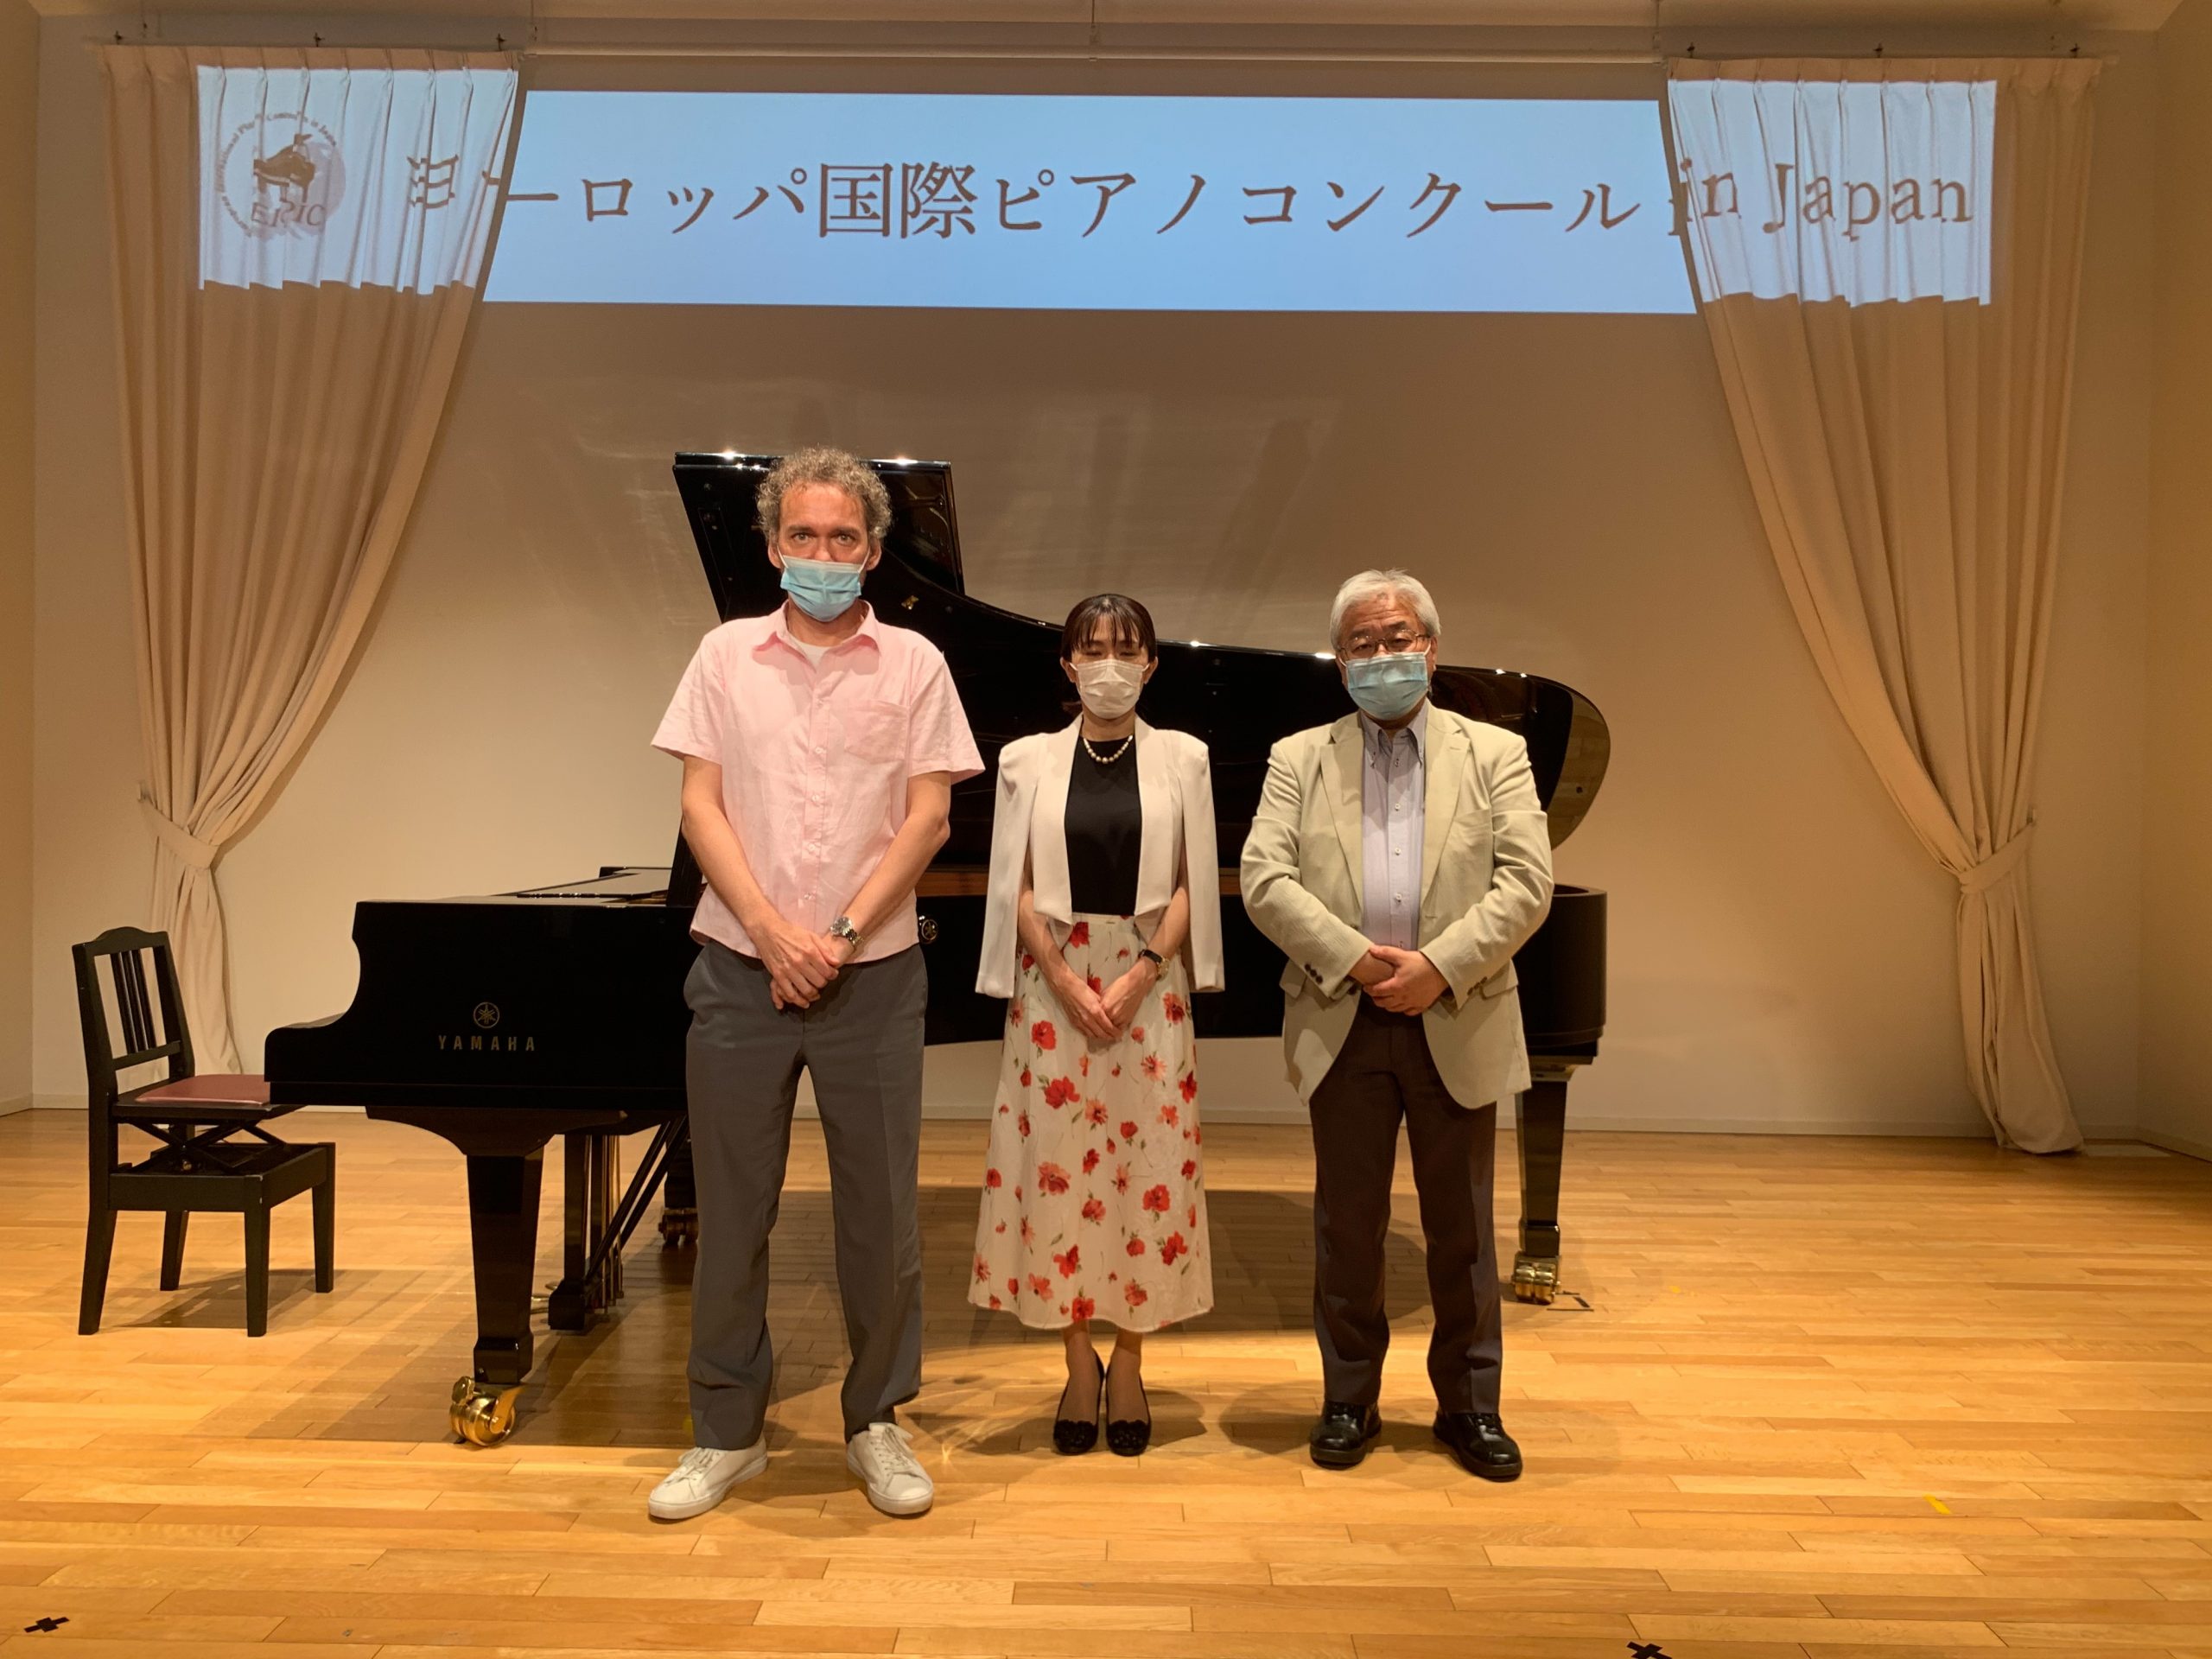 第12回ヨーロッパ国際ピアノコンクールin Japan 札幌地区予選